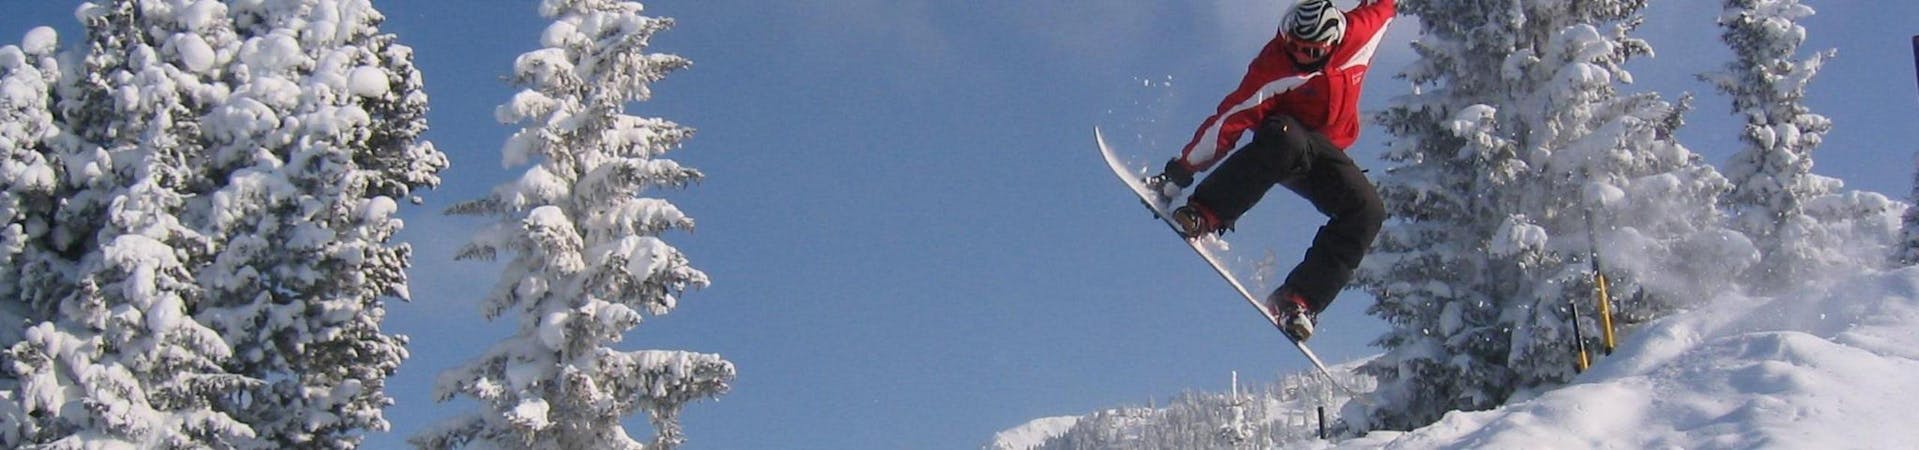 Cours de snowboard dès 15 ans - Premier cours.